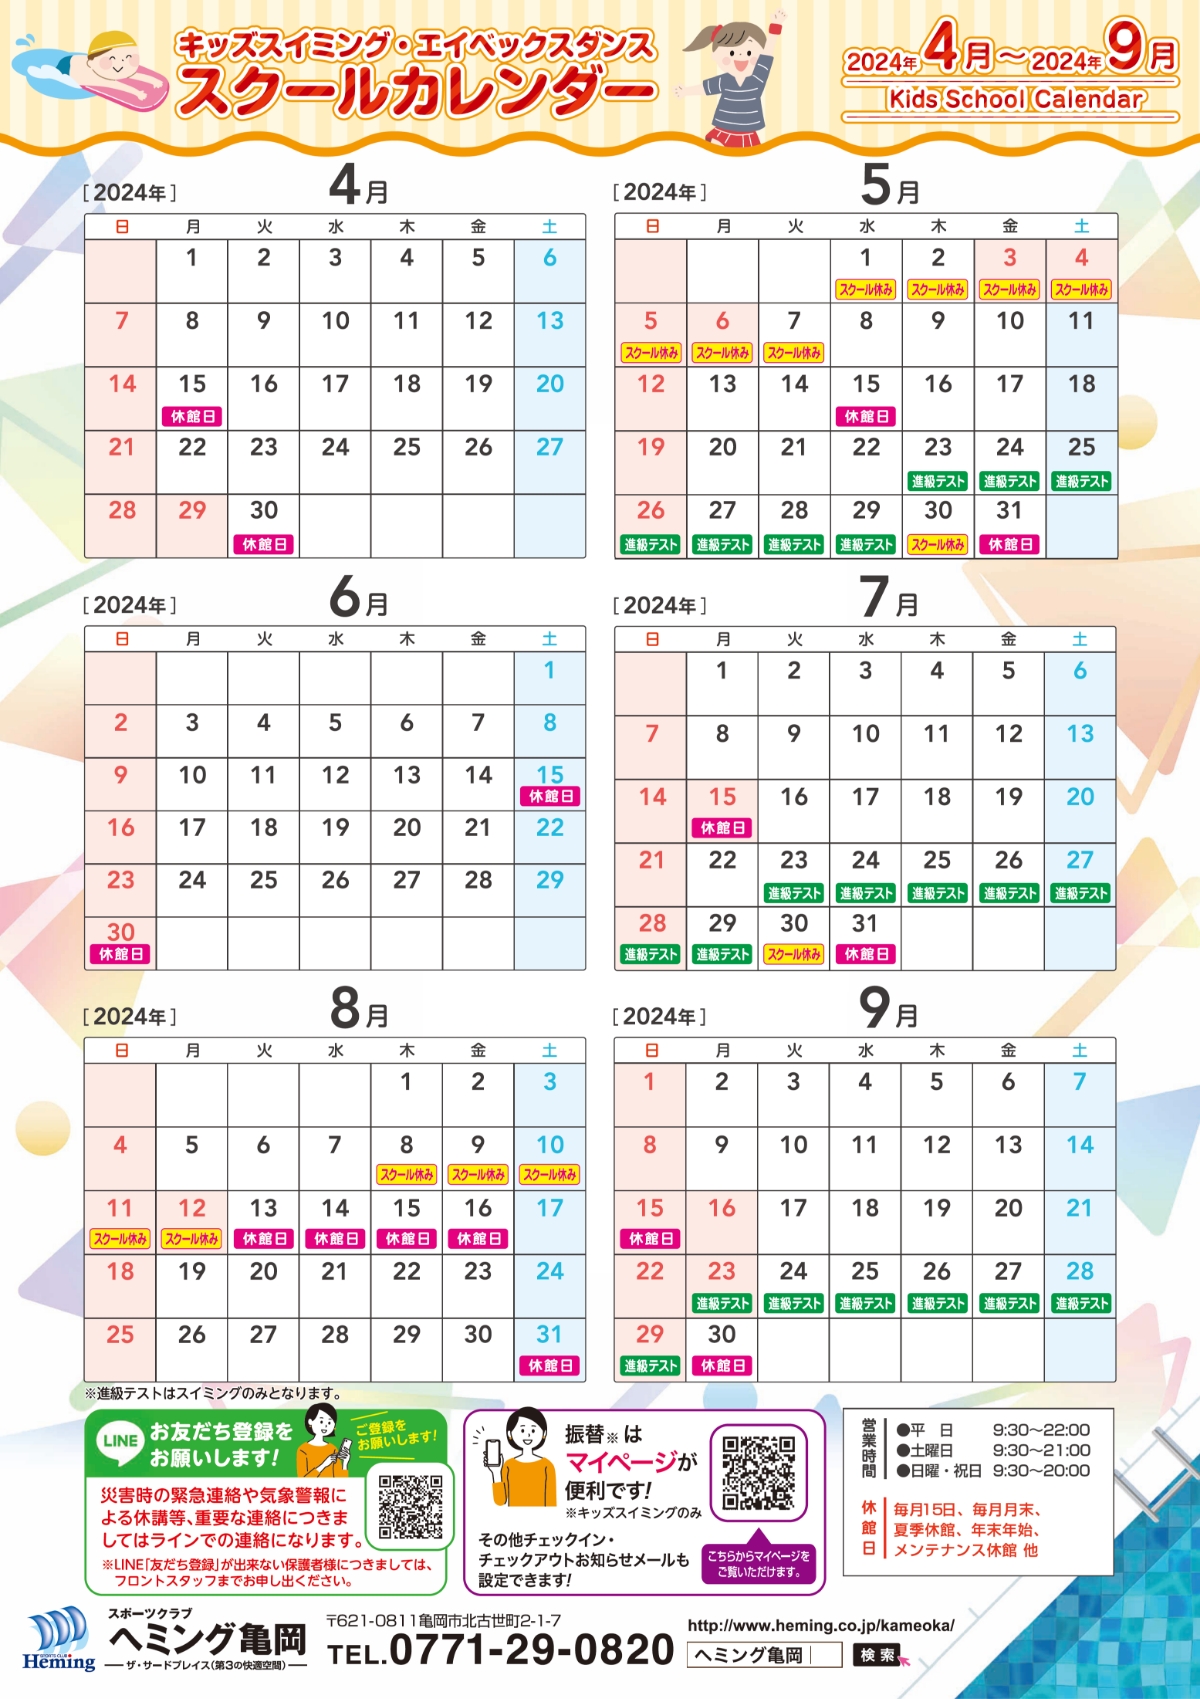 ヘミング亀岡 キッズスイミングスクールカレンダー